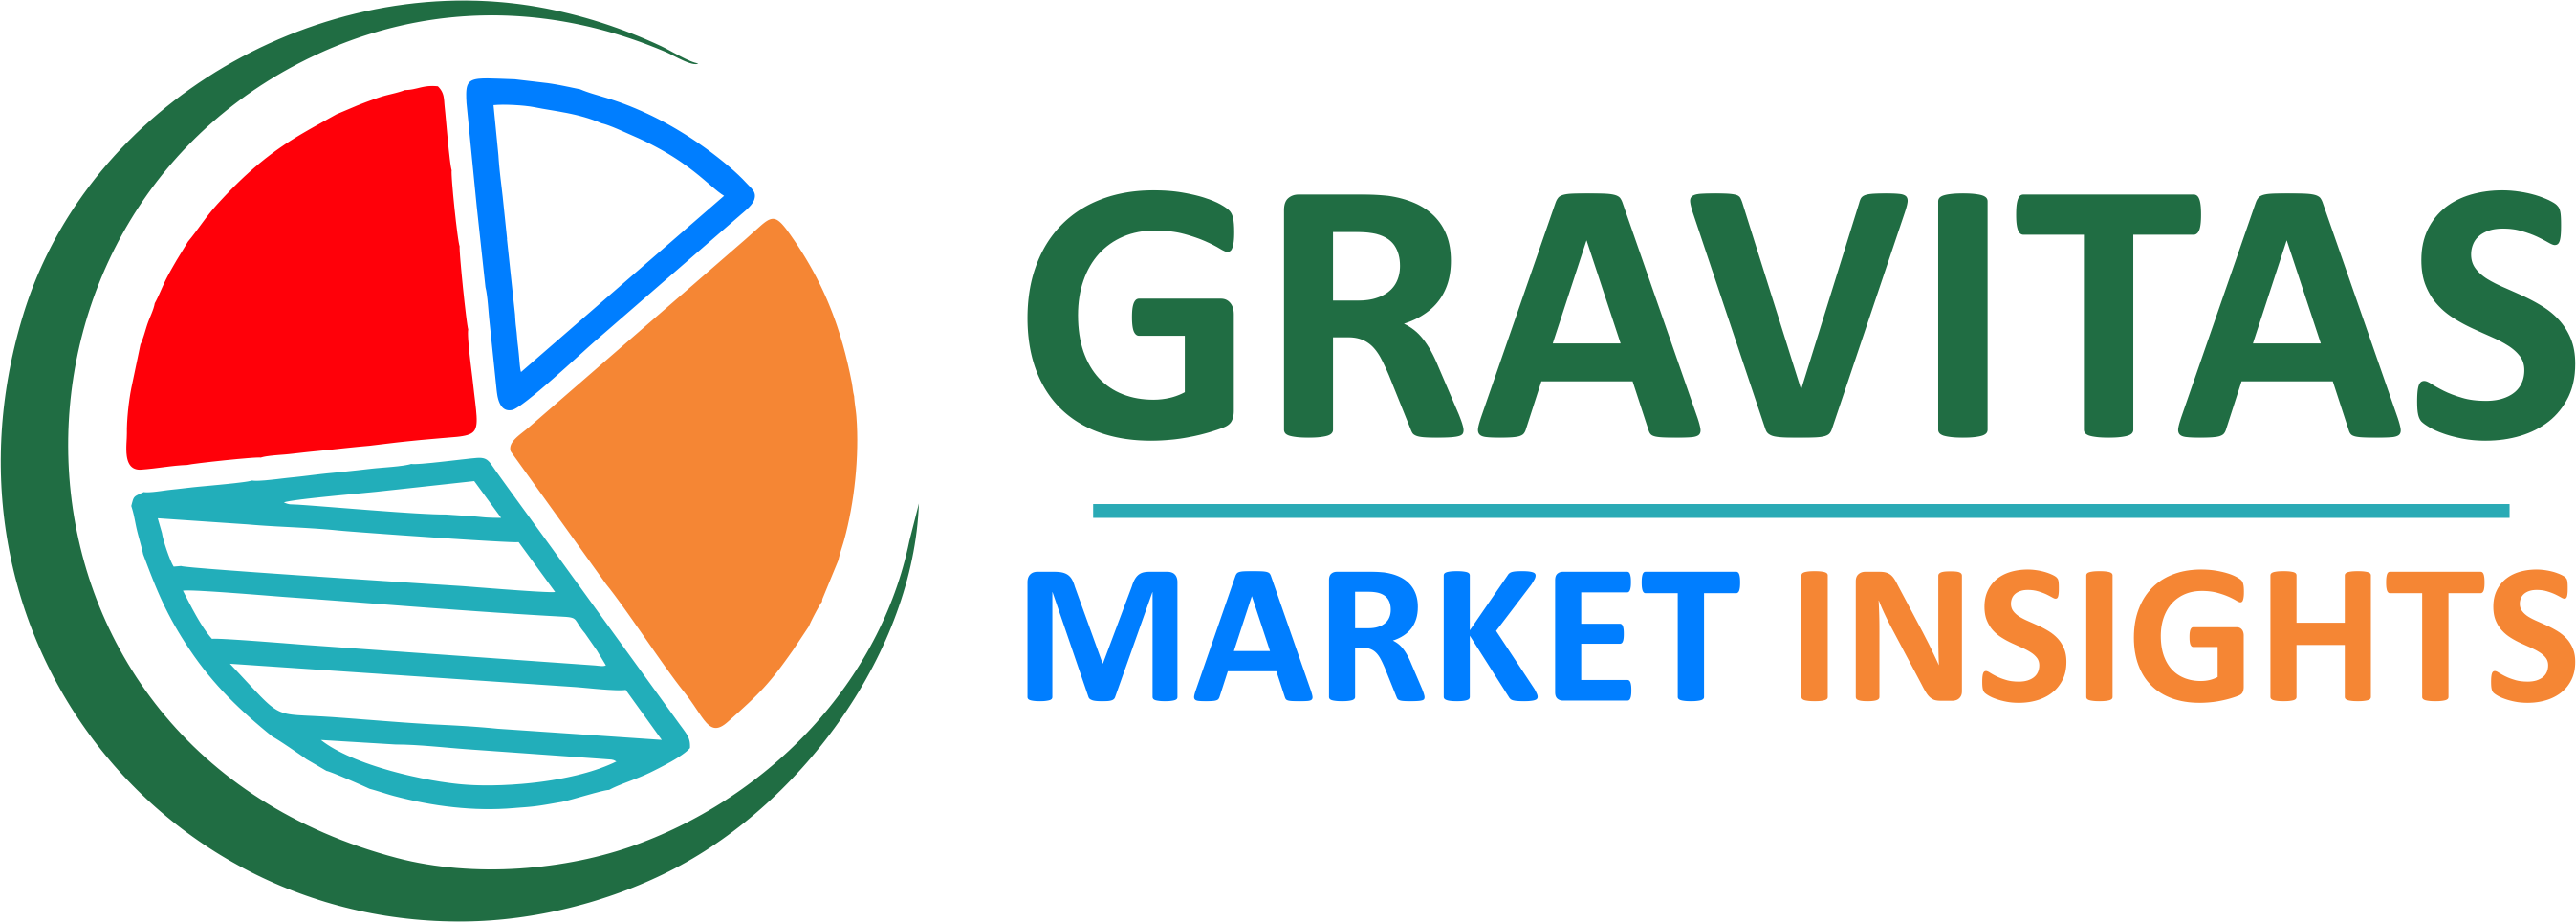 Gravitas Market Insights